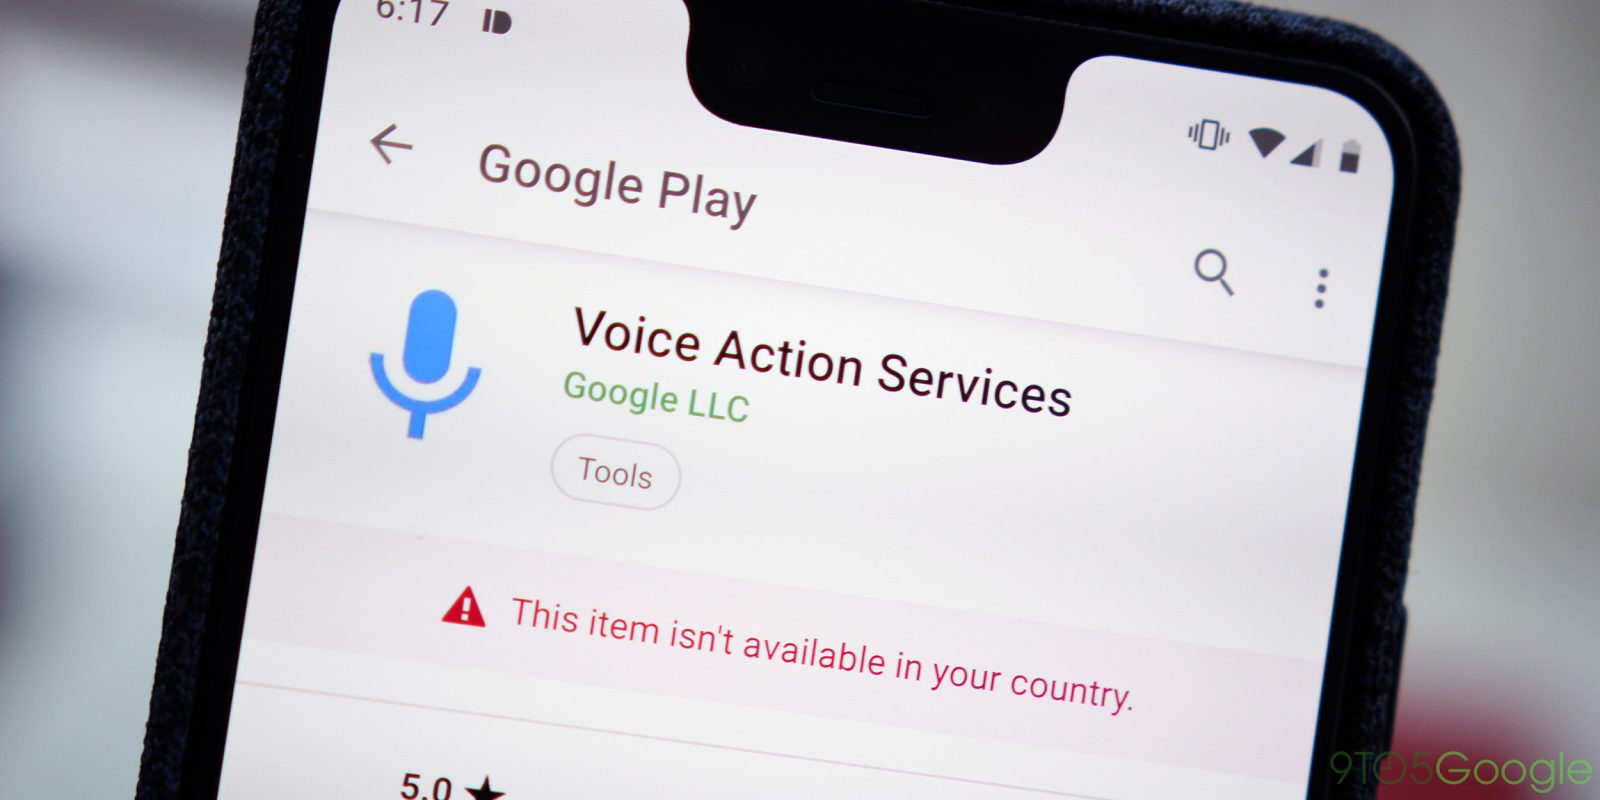 Voice Action Services